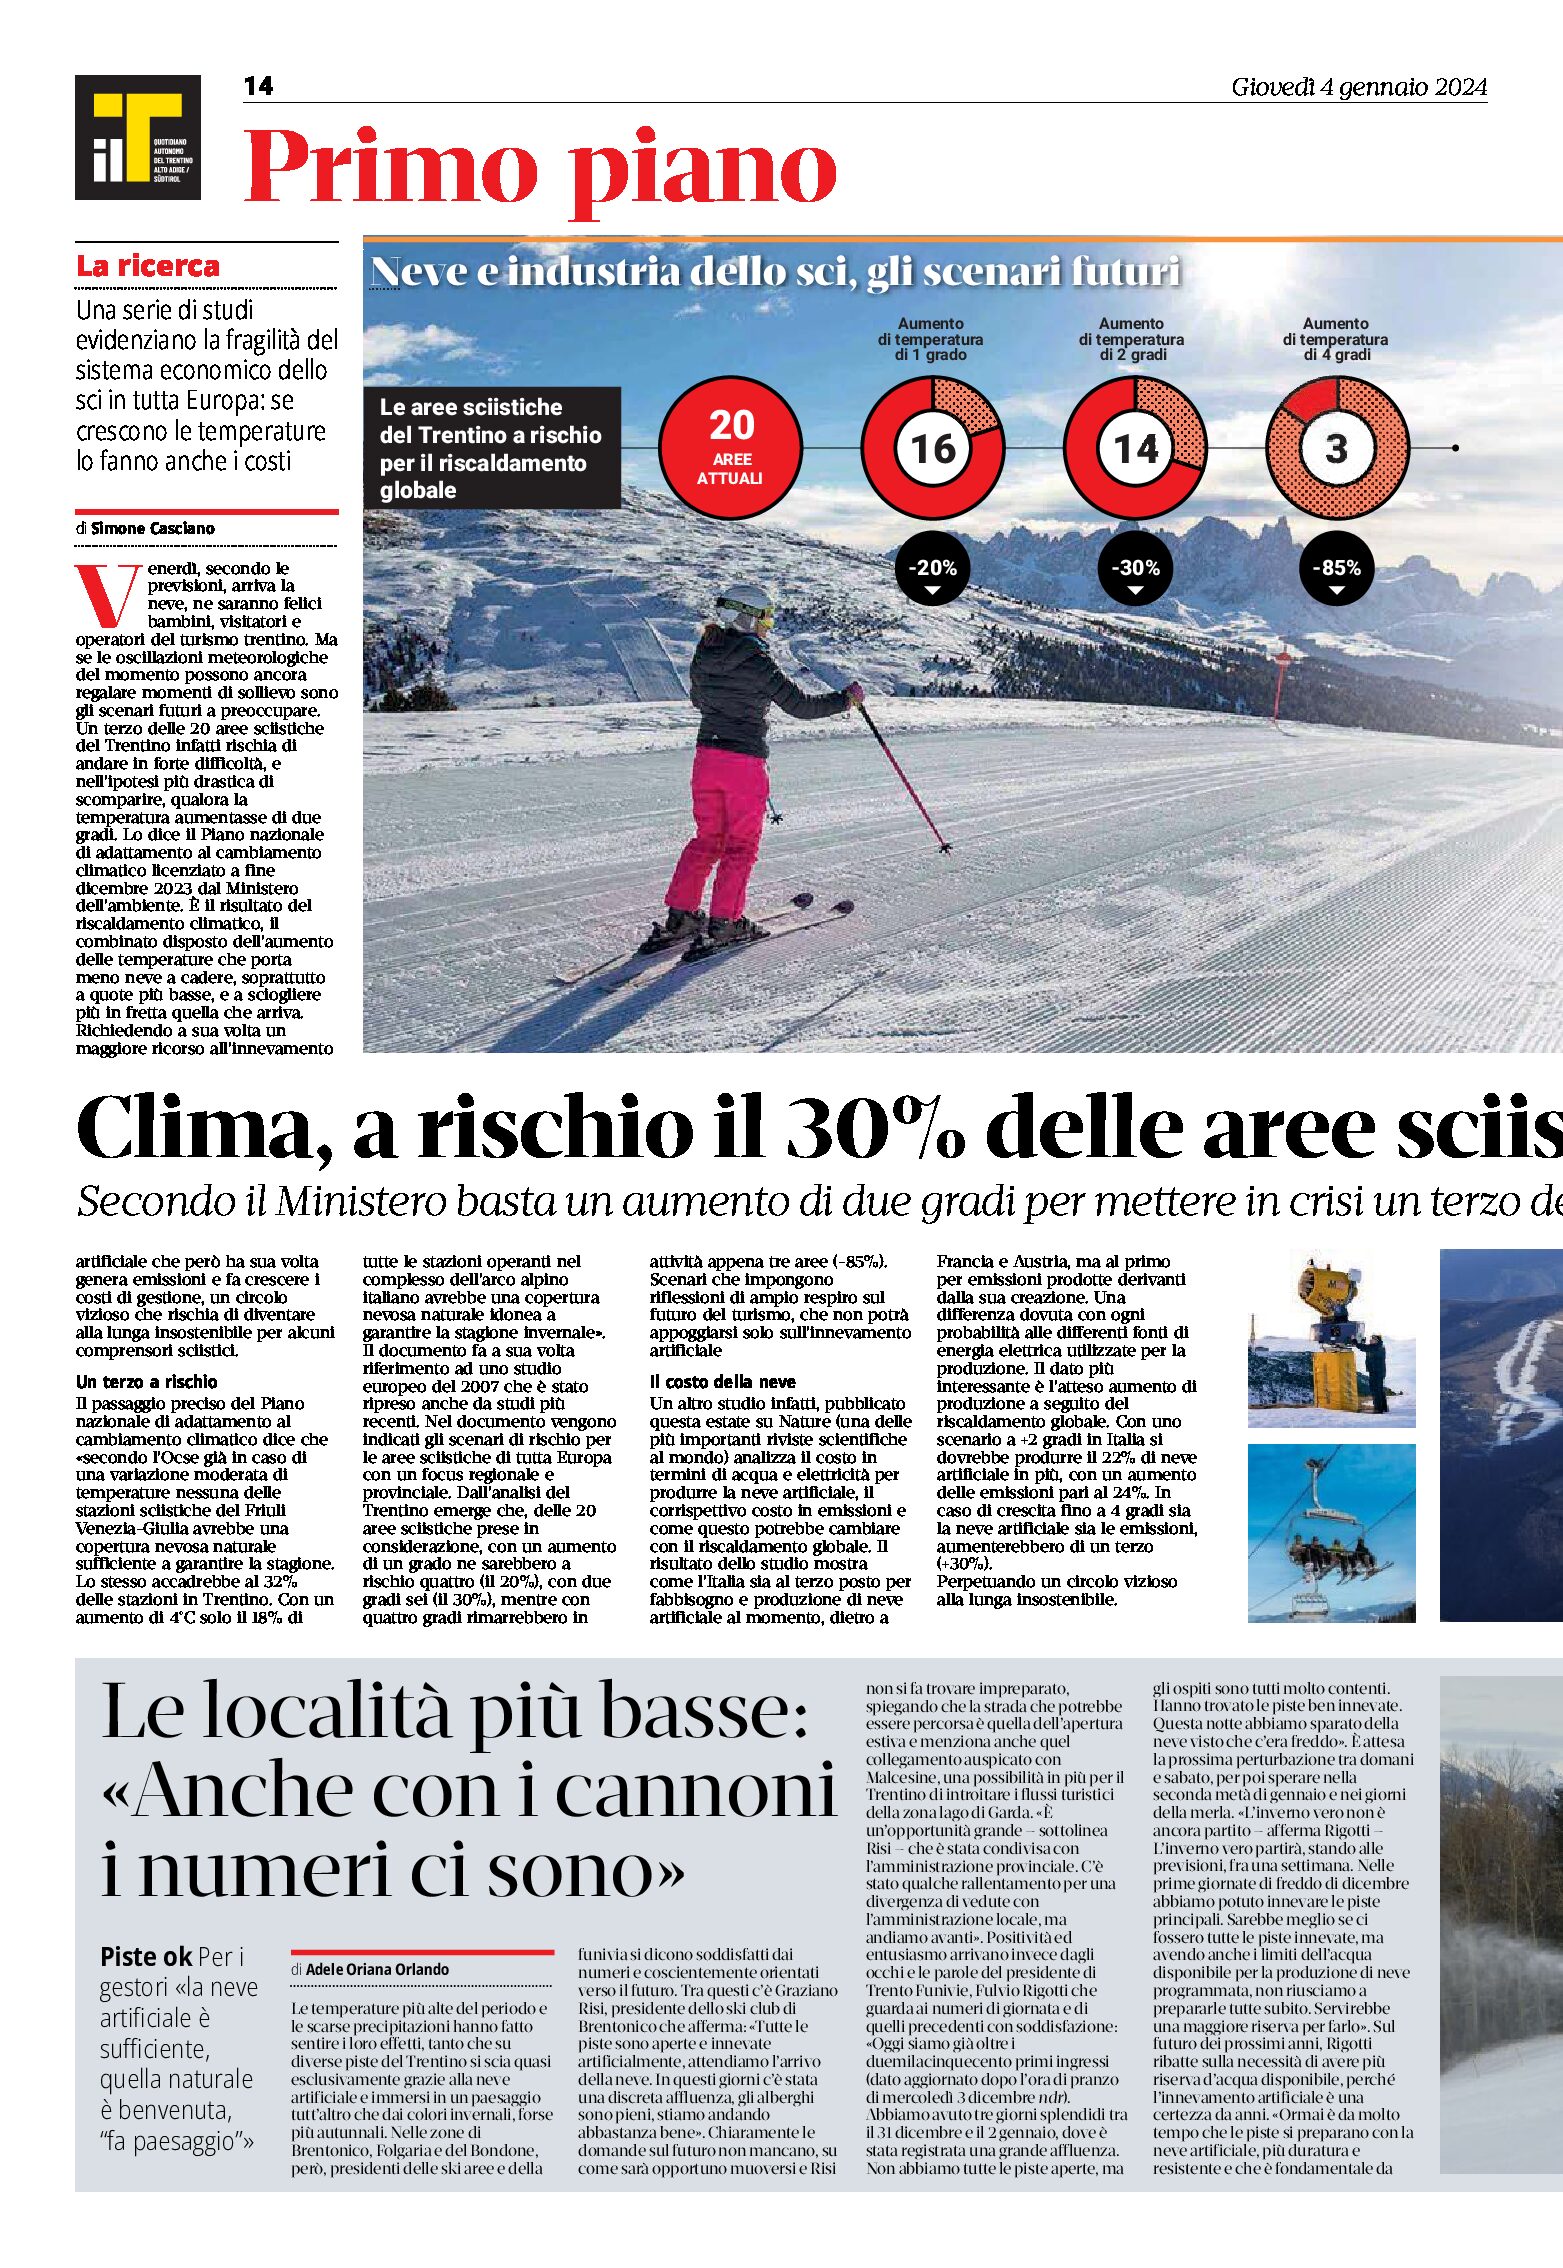 Clima: a rischio il 30% delle aree sciistiche del Trentino